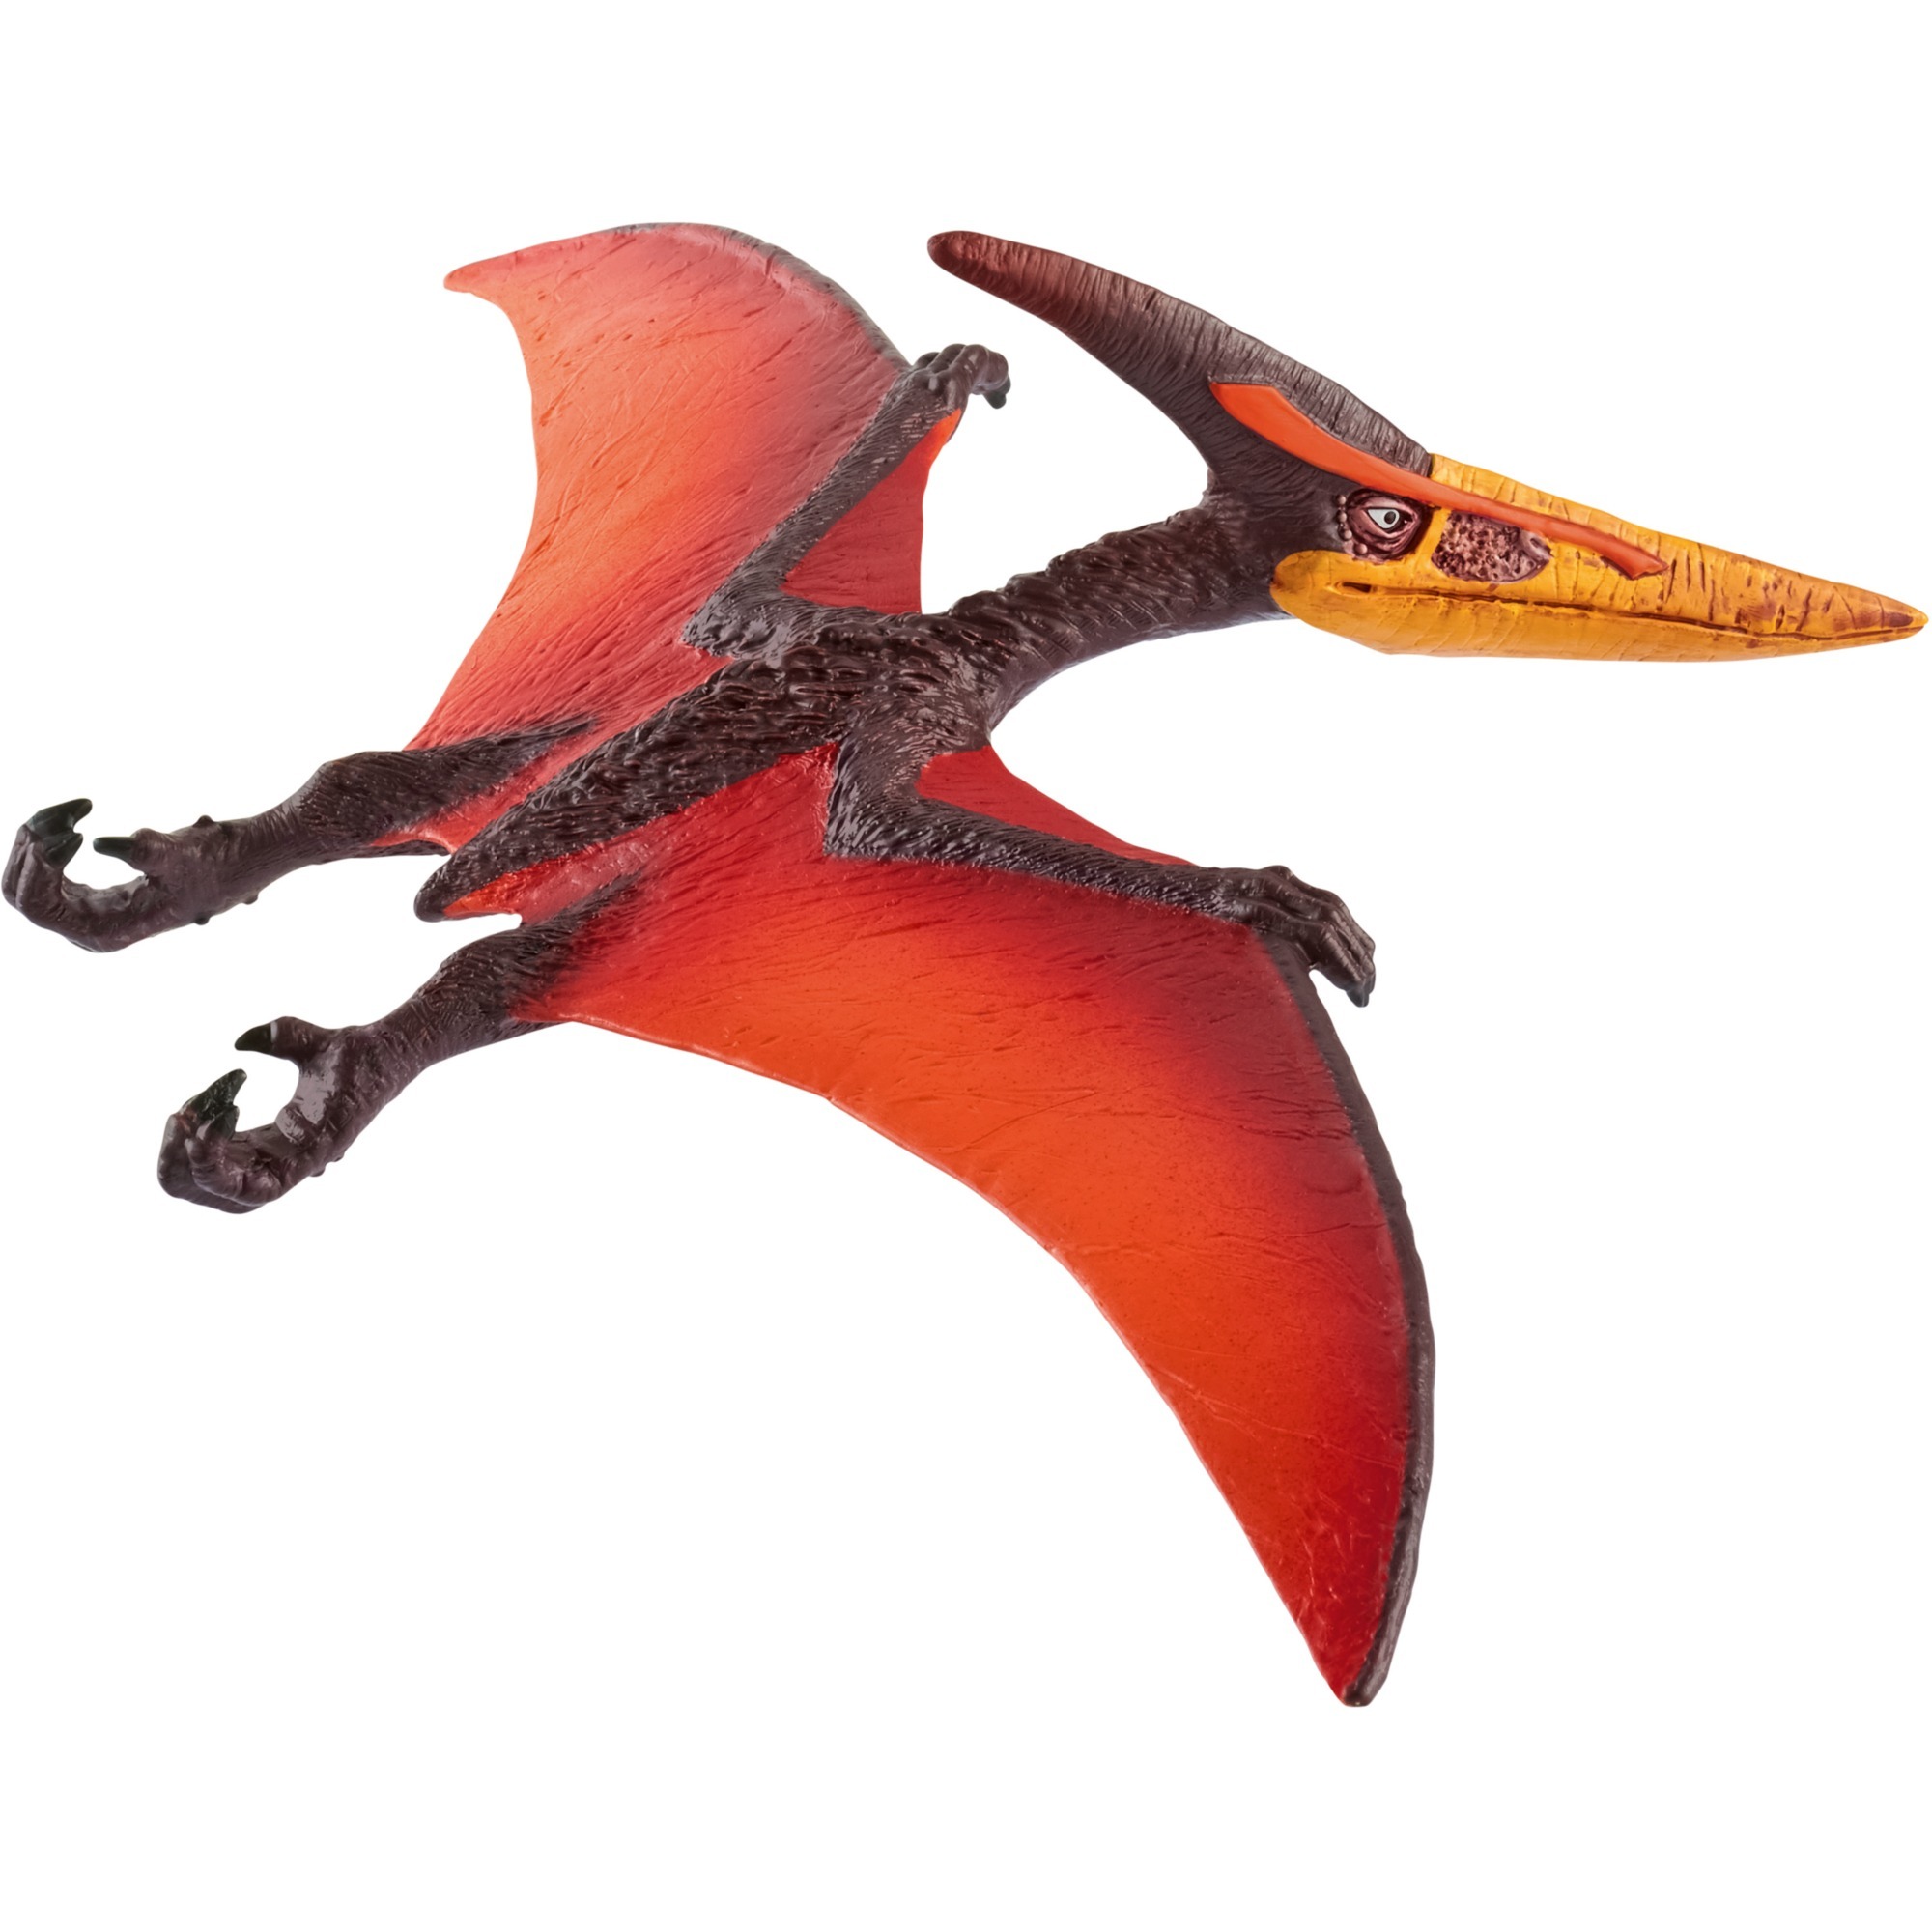 Image of Alternate - Dinosaurier Pteranodon, Spielfigur online einkaufen bei Alternate